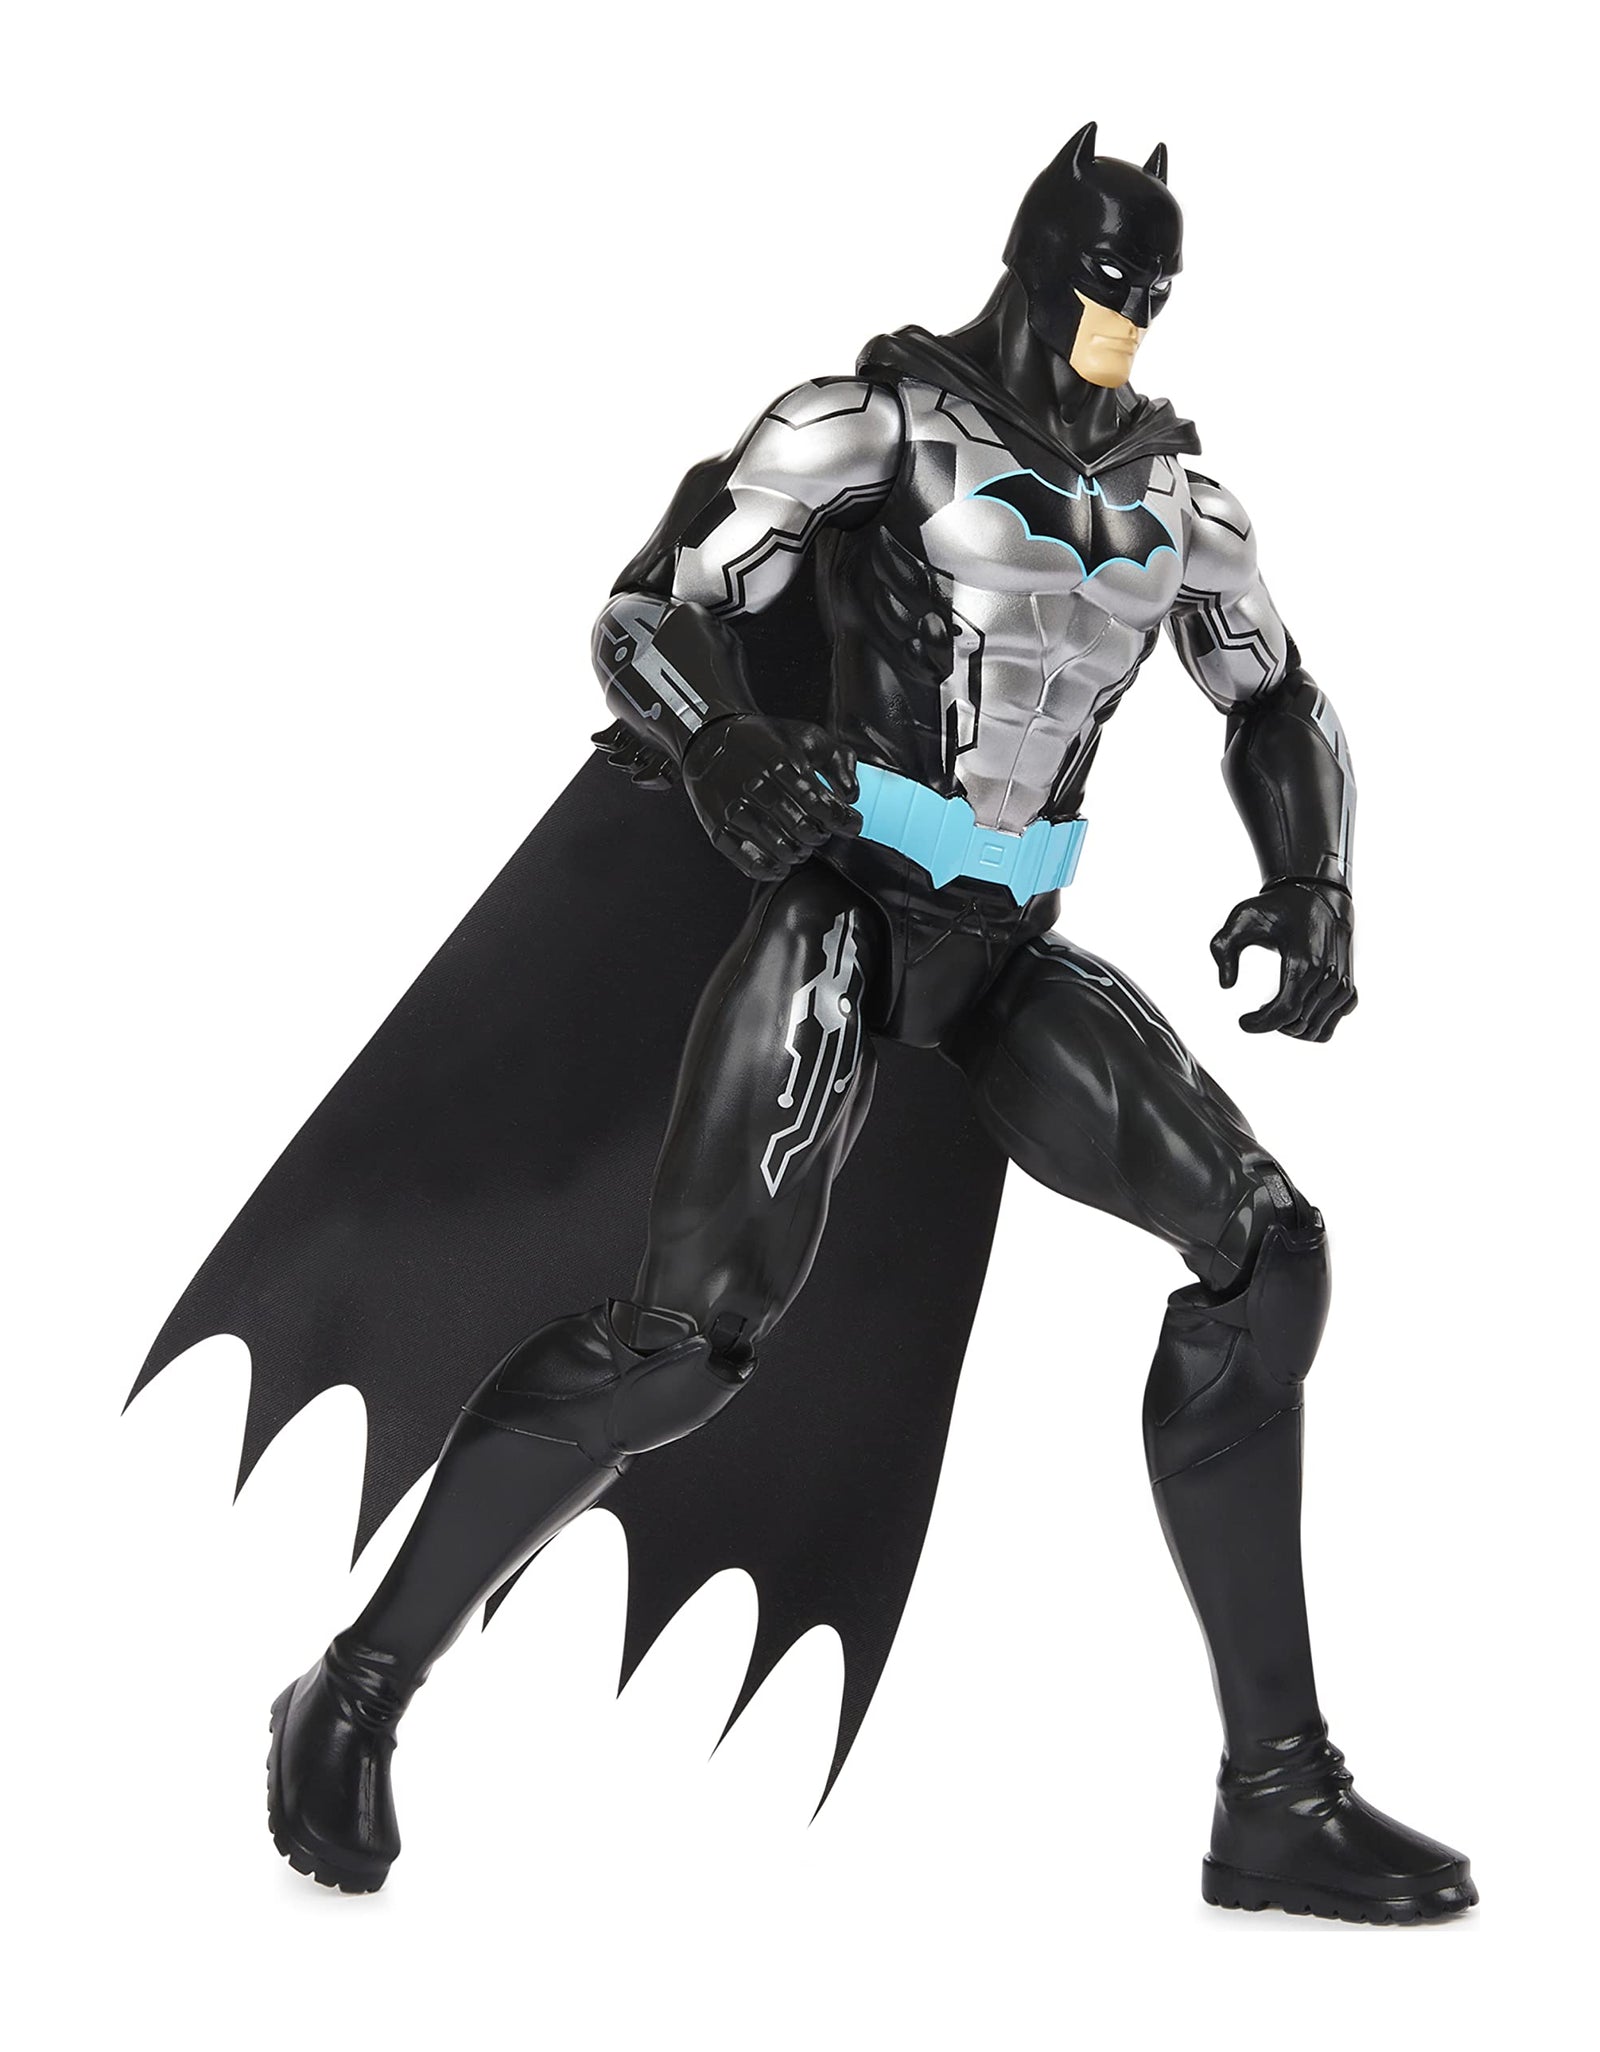 DC Comics Batman 12-inch Bat-Tech Action Figure (Black/Blue Suit), Kids Toys for Boys Aged 3 and up